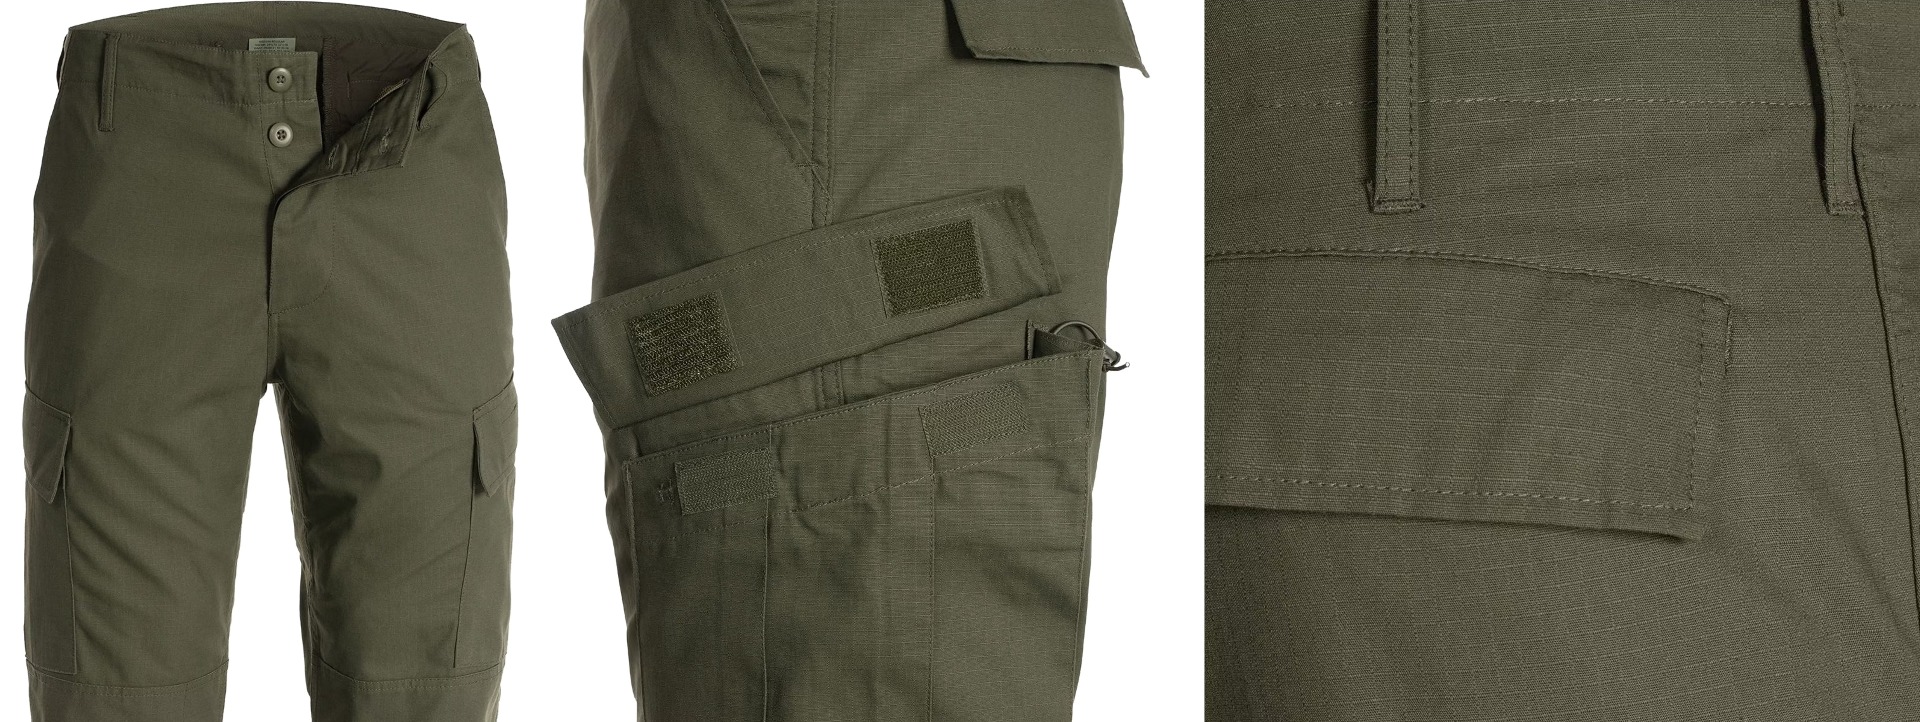 Pridobite svoj par US vojaških hlač ACU olivna barva - vrhunske taktične hlače za udobje, vzdržljivost in funkcionalnost. Primerno za vojaške operacije, pohodništvo, lov in varnostne sile. Opremite se s kakovostnim vojaškim oblačilom!